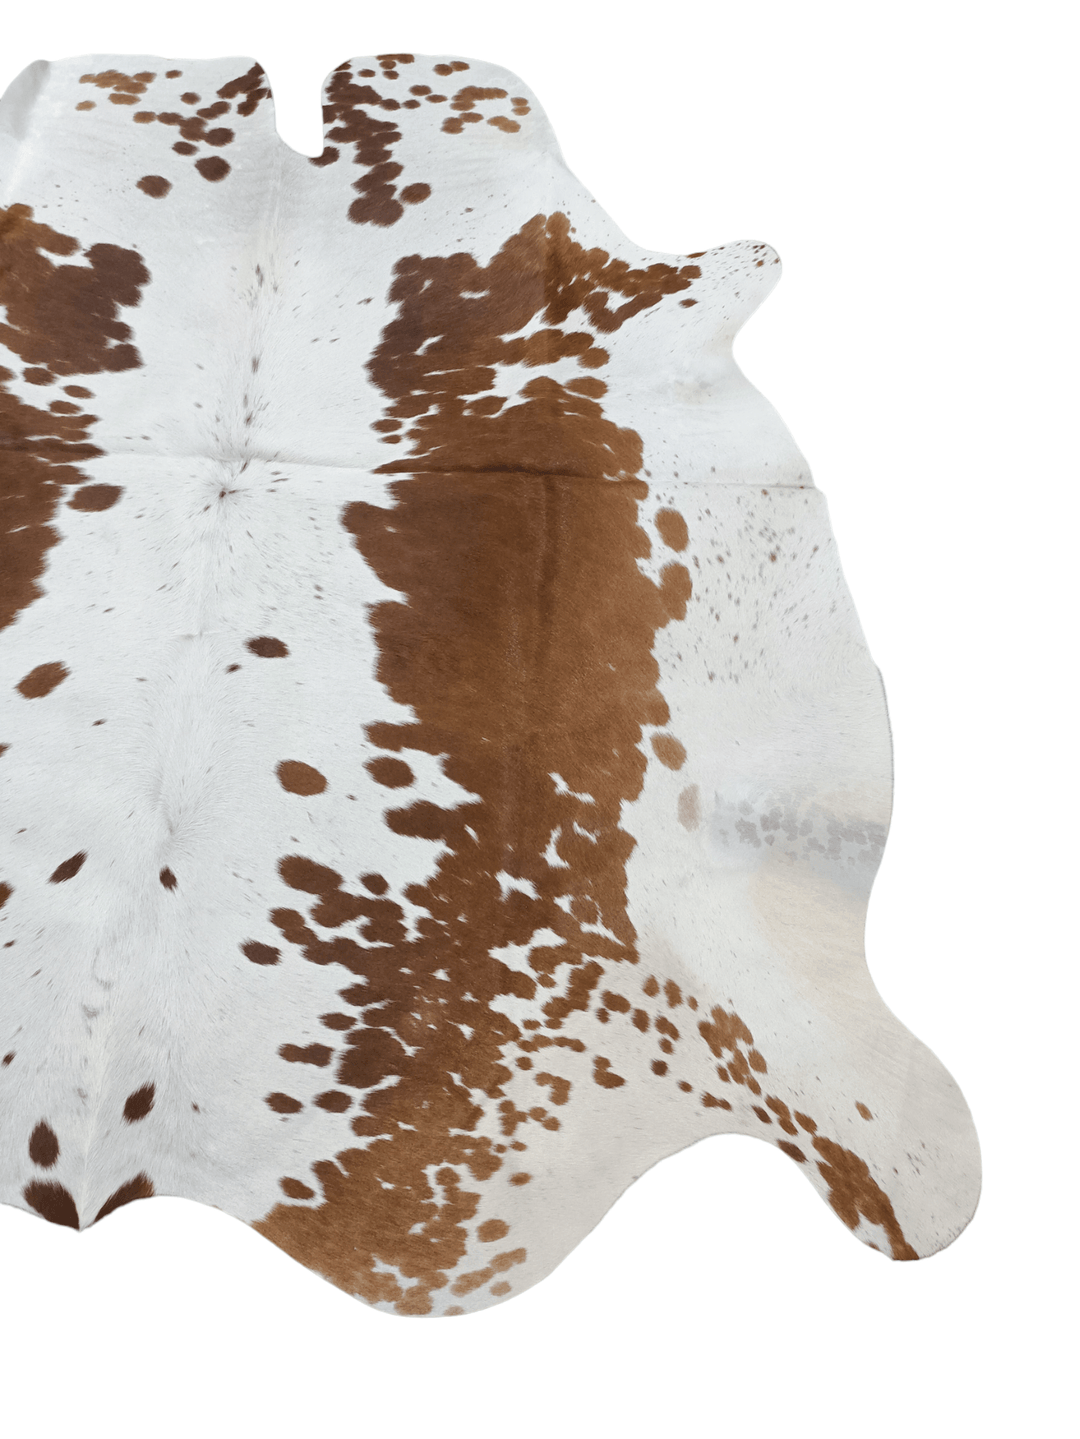 Brown Specked Cowhide Rug #1566